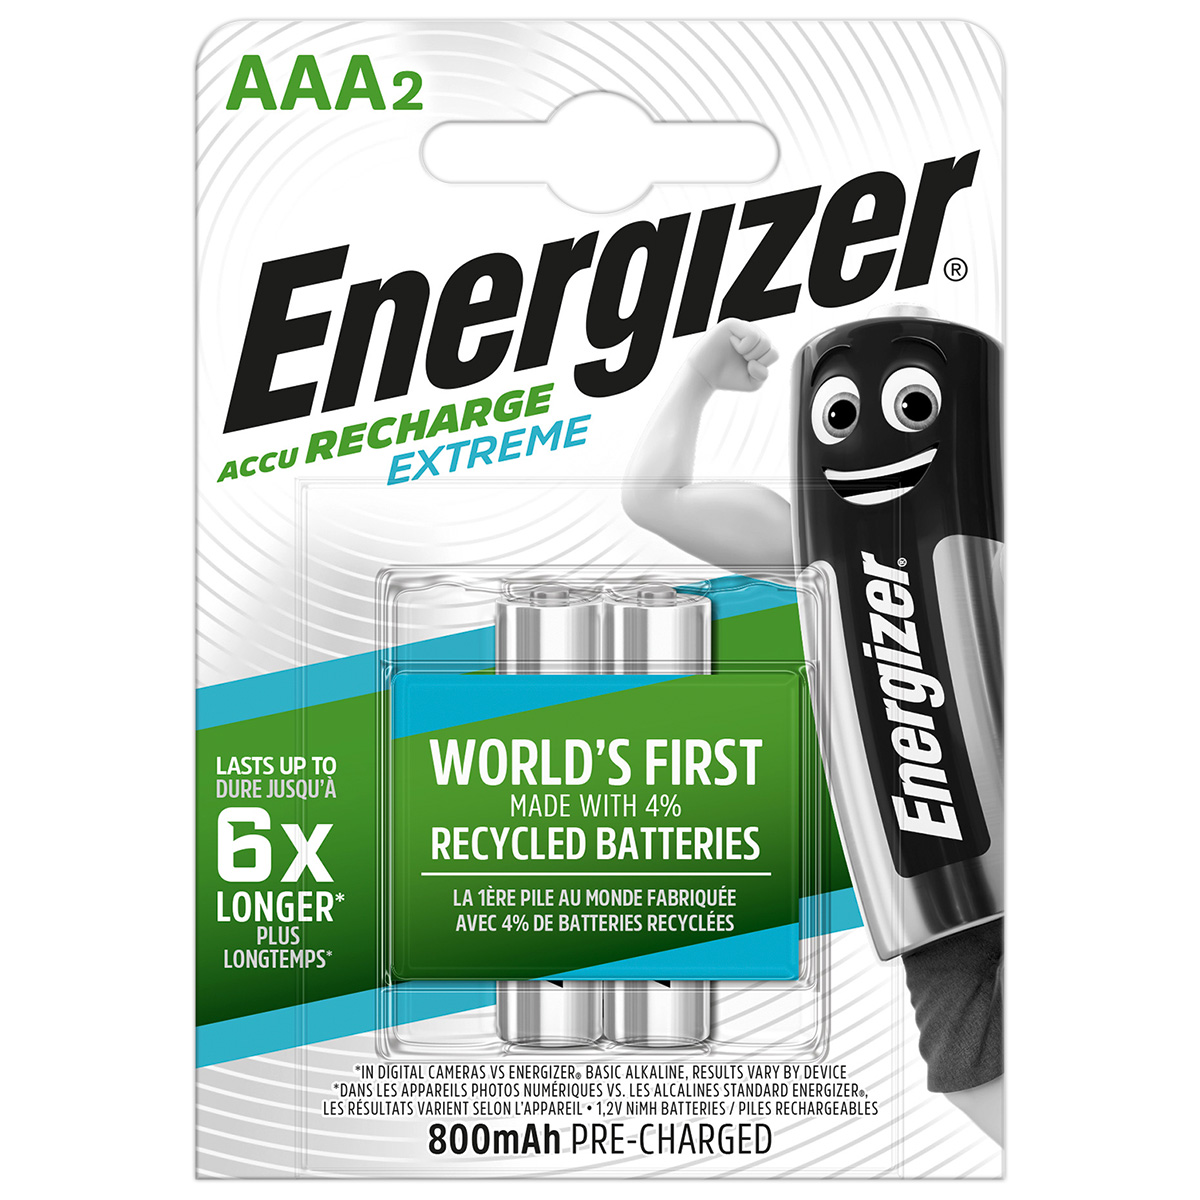 Energizer Micro accumulateur Recharge Extreme 1,2 volt 800 mAh dans un blister AAA/LR03